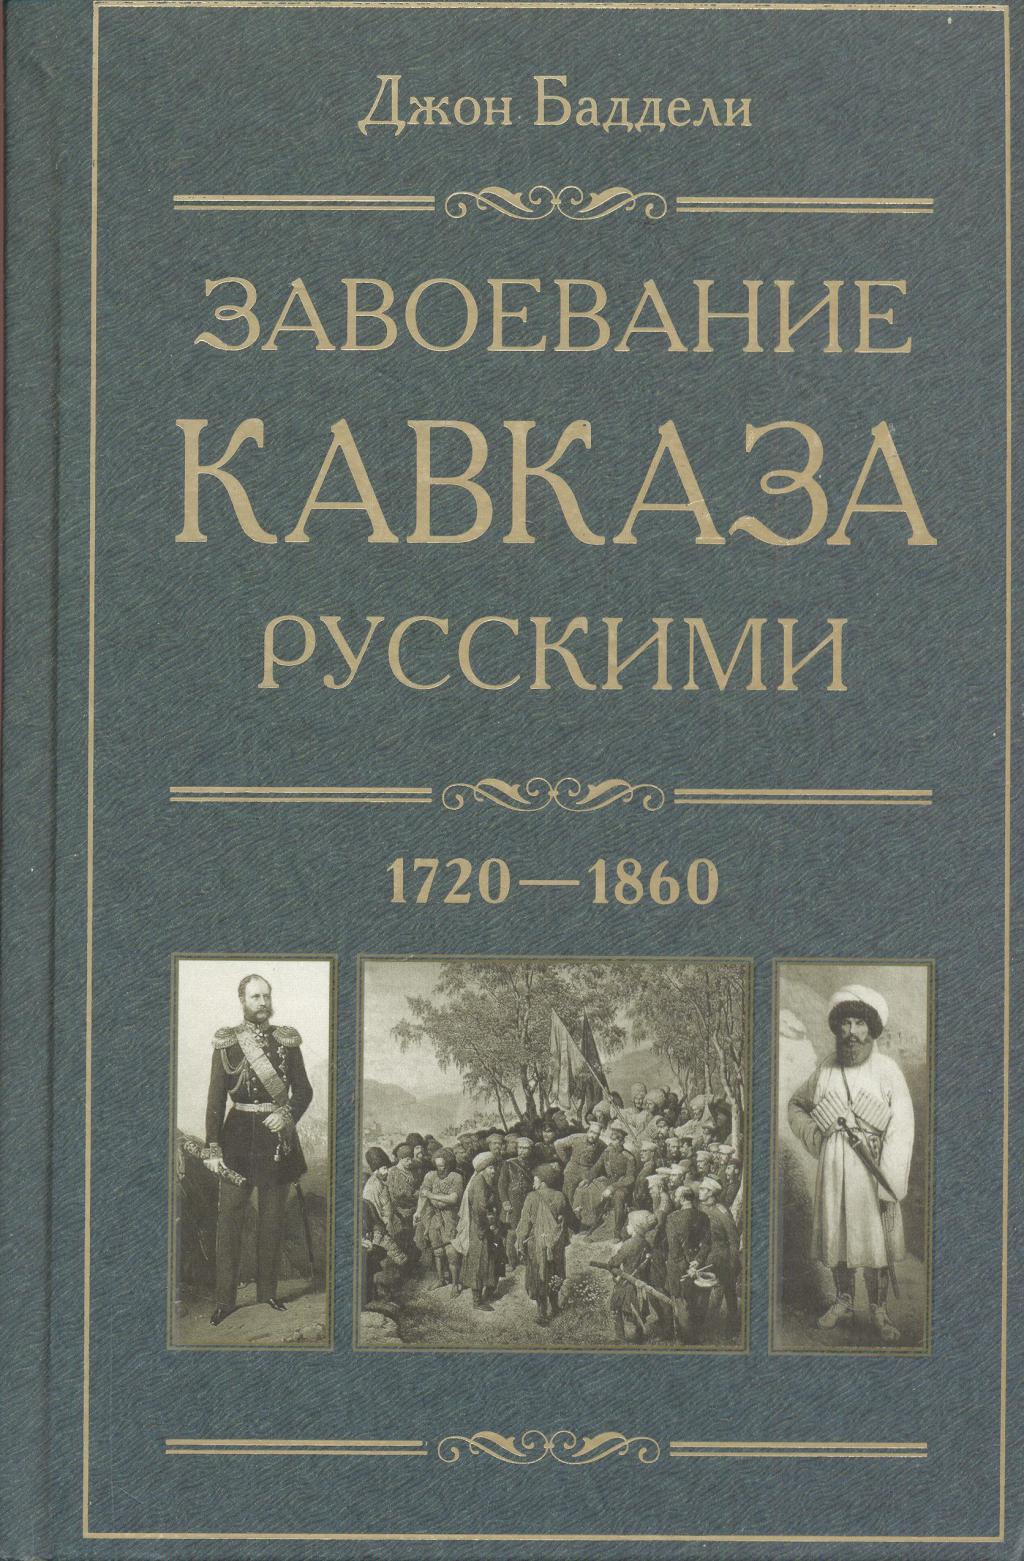 Завоевание Кавказа русскими 1720—1860